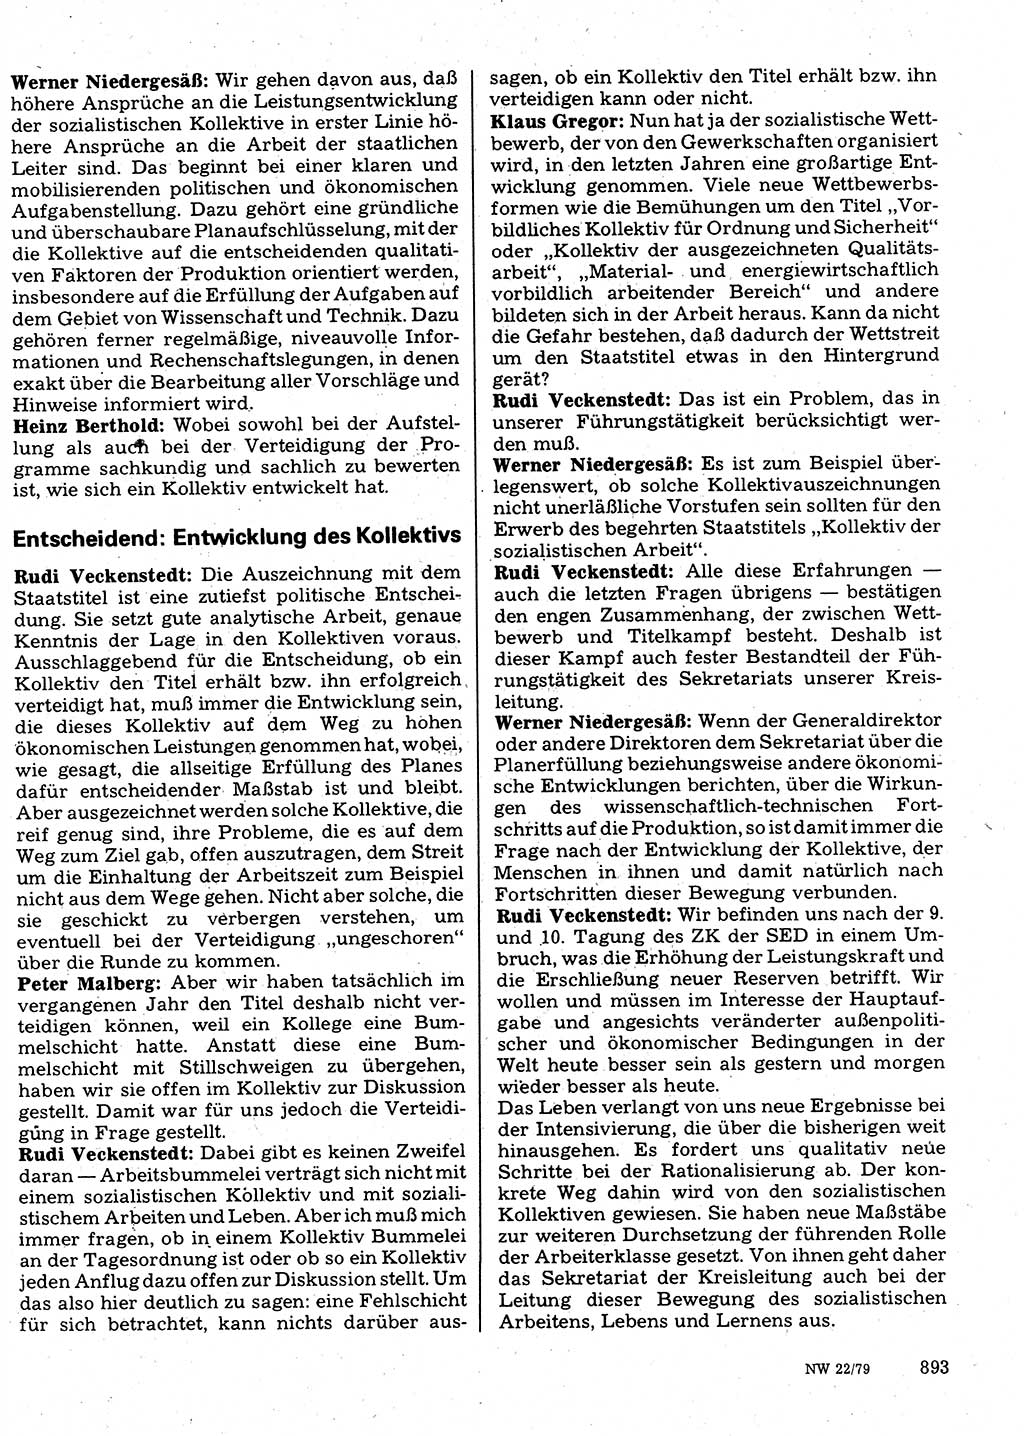 Neuer Weg (NW), Organ des Zentralkomitees (ZK) der SED (Sozialistische Einheitspartei Deutschlands) für Fragen des Parteilebens, 34. Jahrgang [Deutsche Demokratische Republik (DDR)] 1979, Seite 893 (NW ZK SED DDR 1979, S. 893)